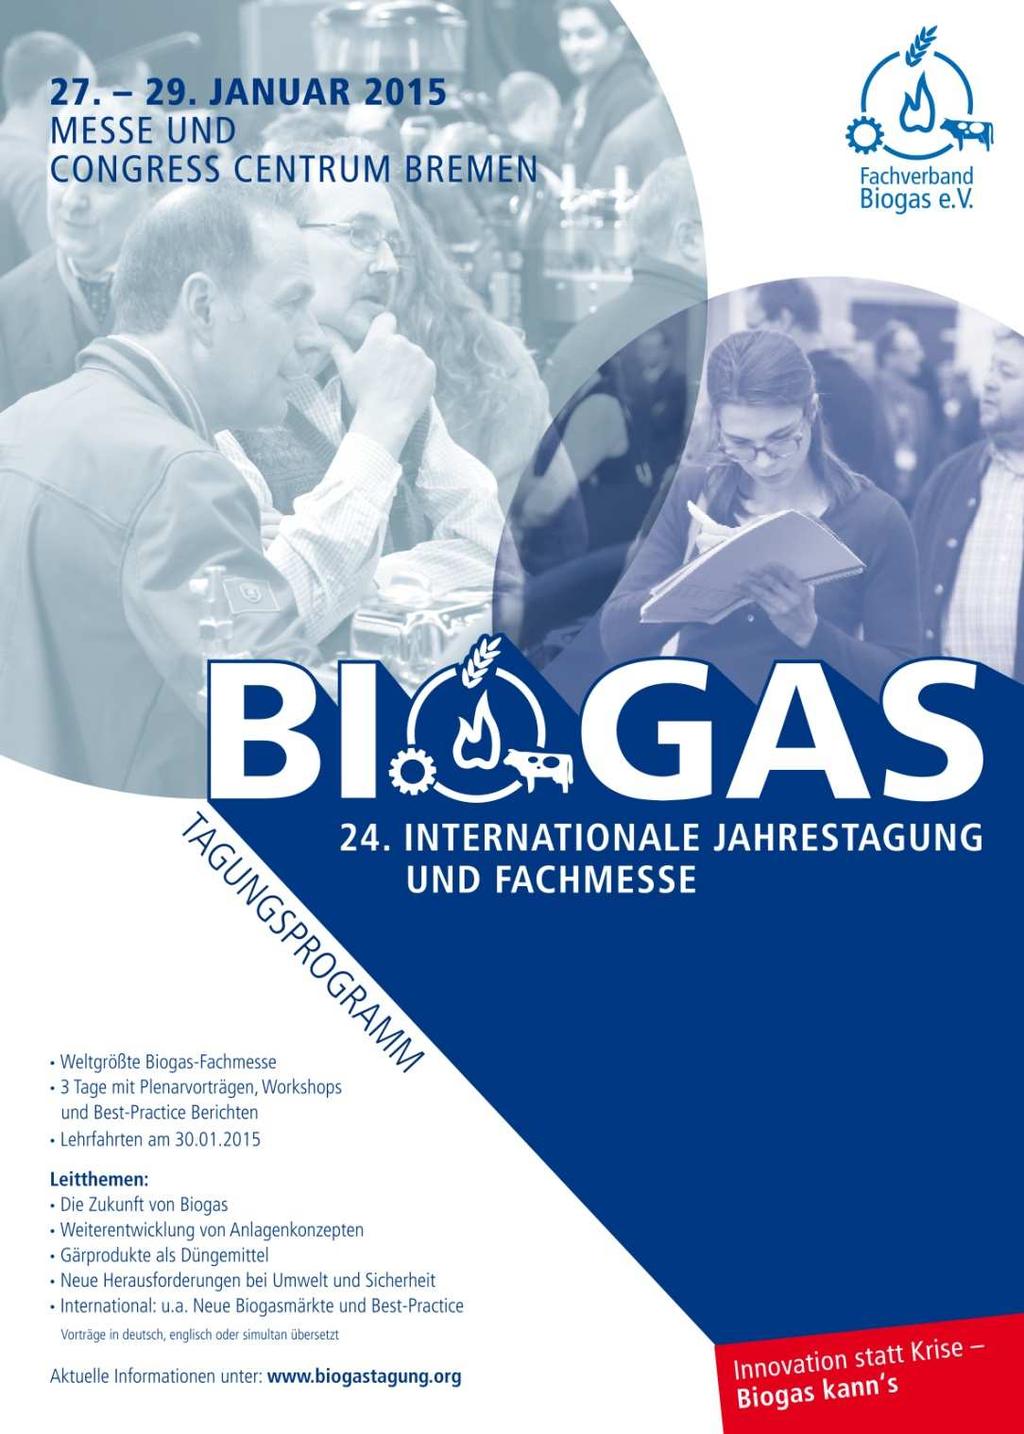 Vielen Dank für Ihre Aufmerksamkeit! Werden Sie Mitglied im Fachverband Biogas e.v., der stärksten Biogas- Interessenvertretung in Europa und kommen Sie zur 24.